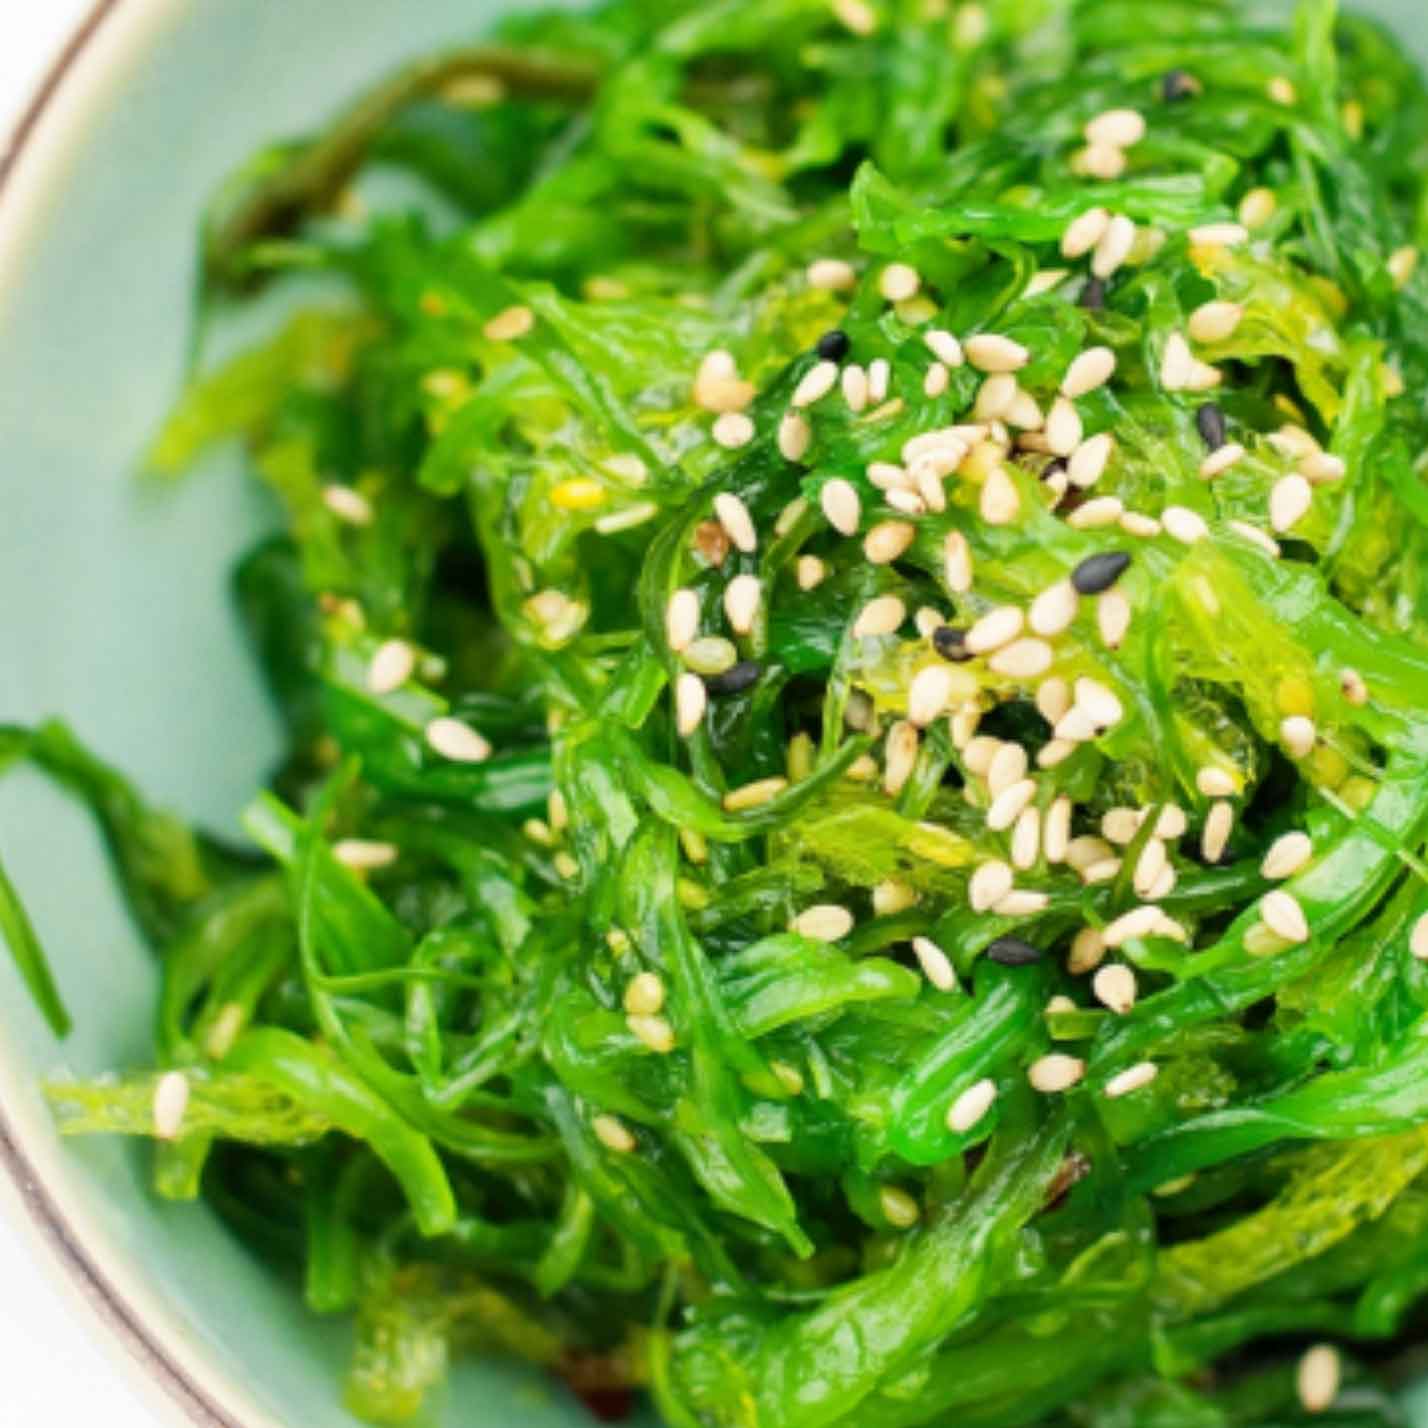 Deli - Seaweed Salad